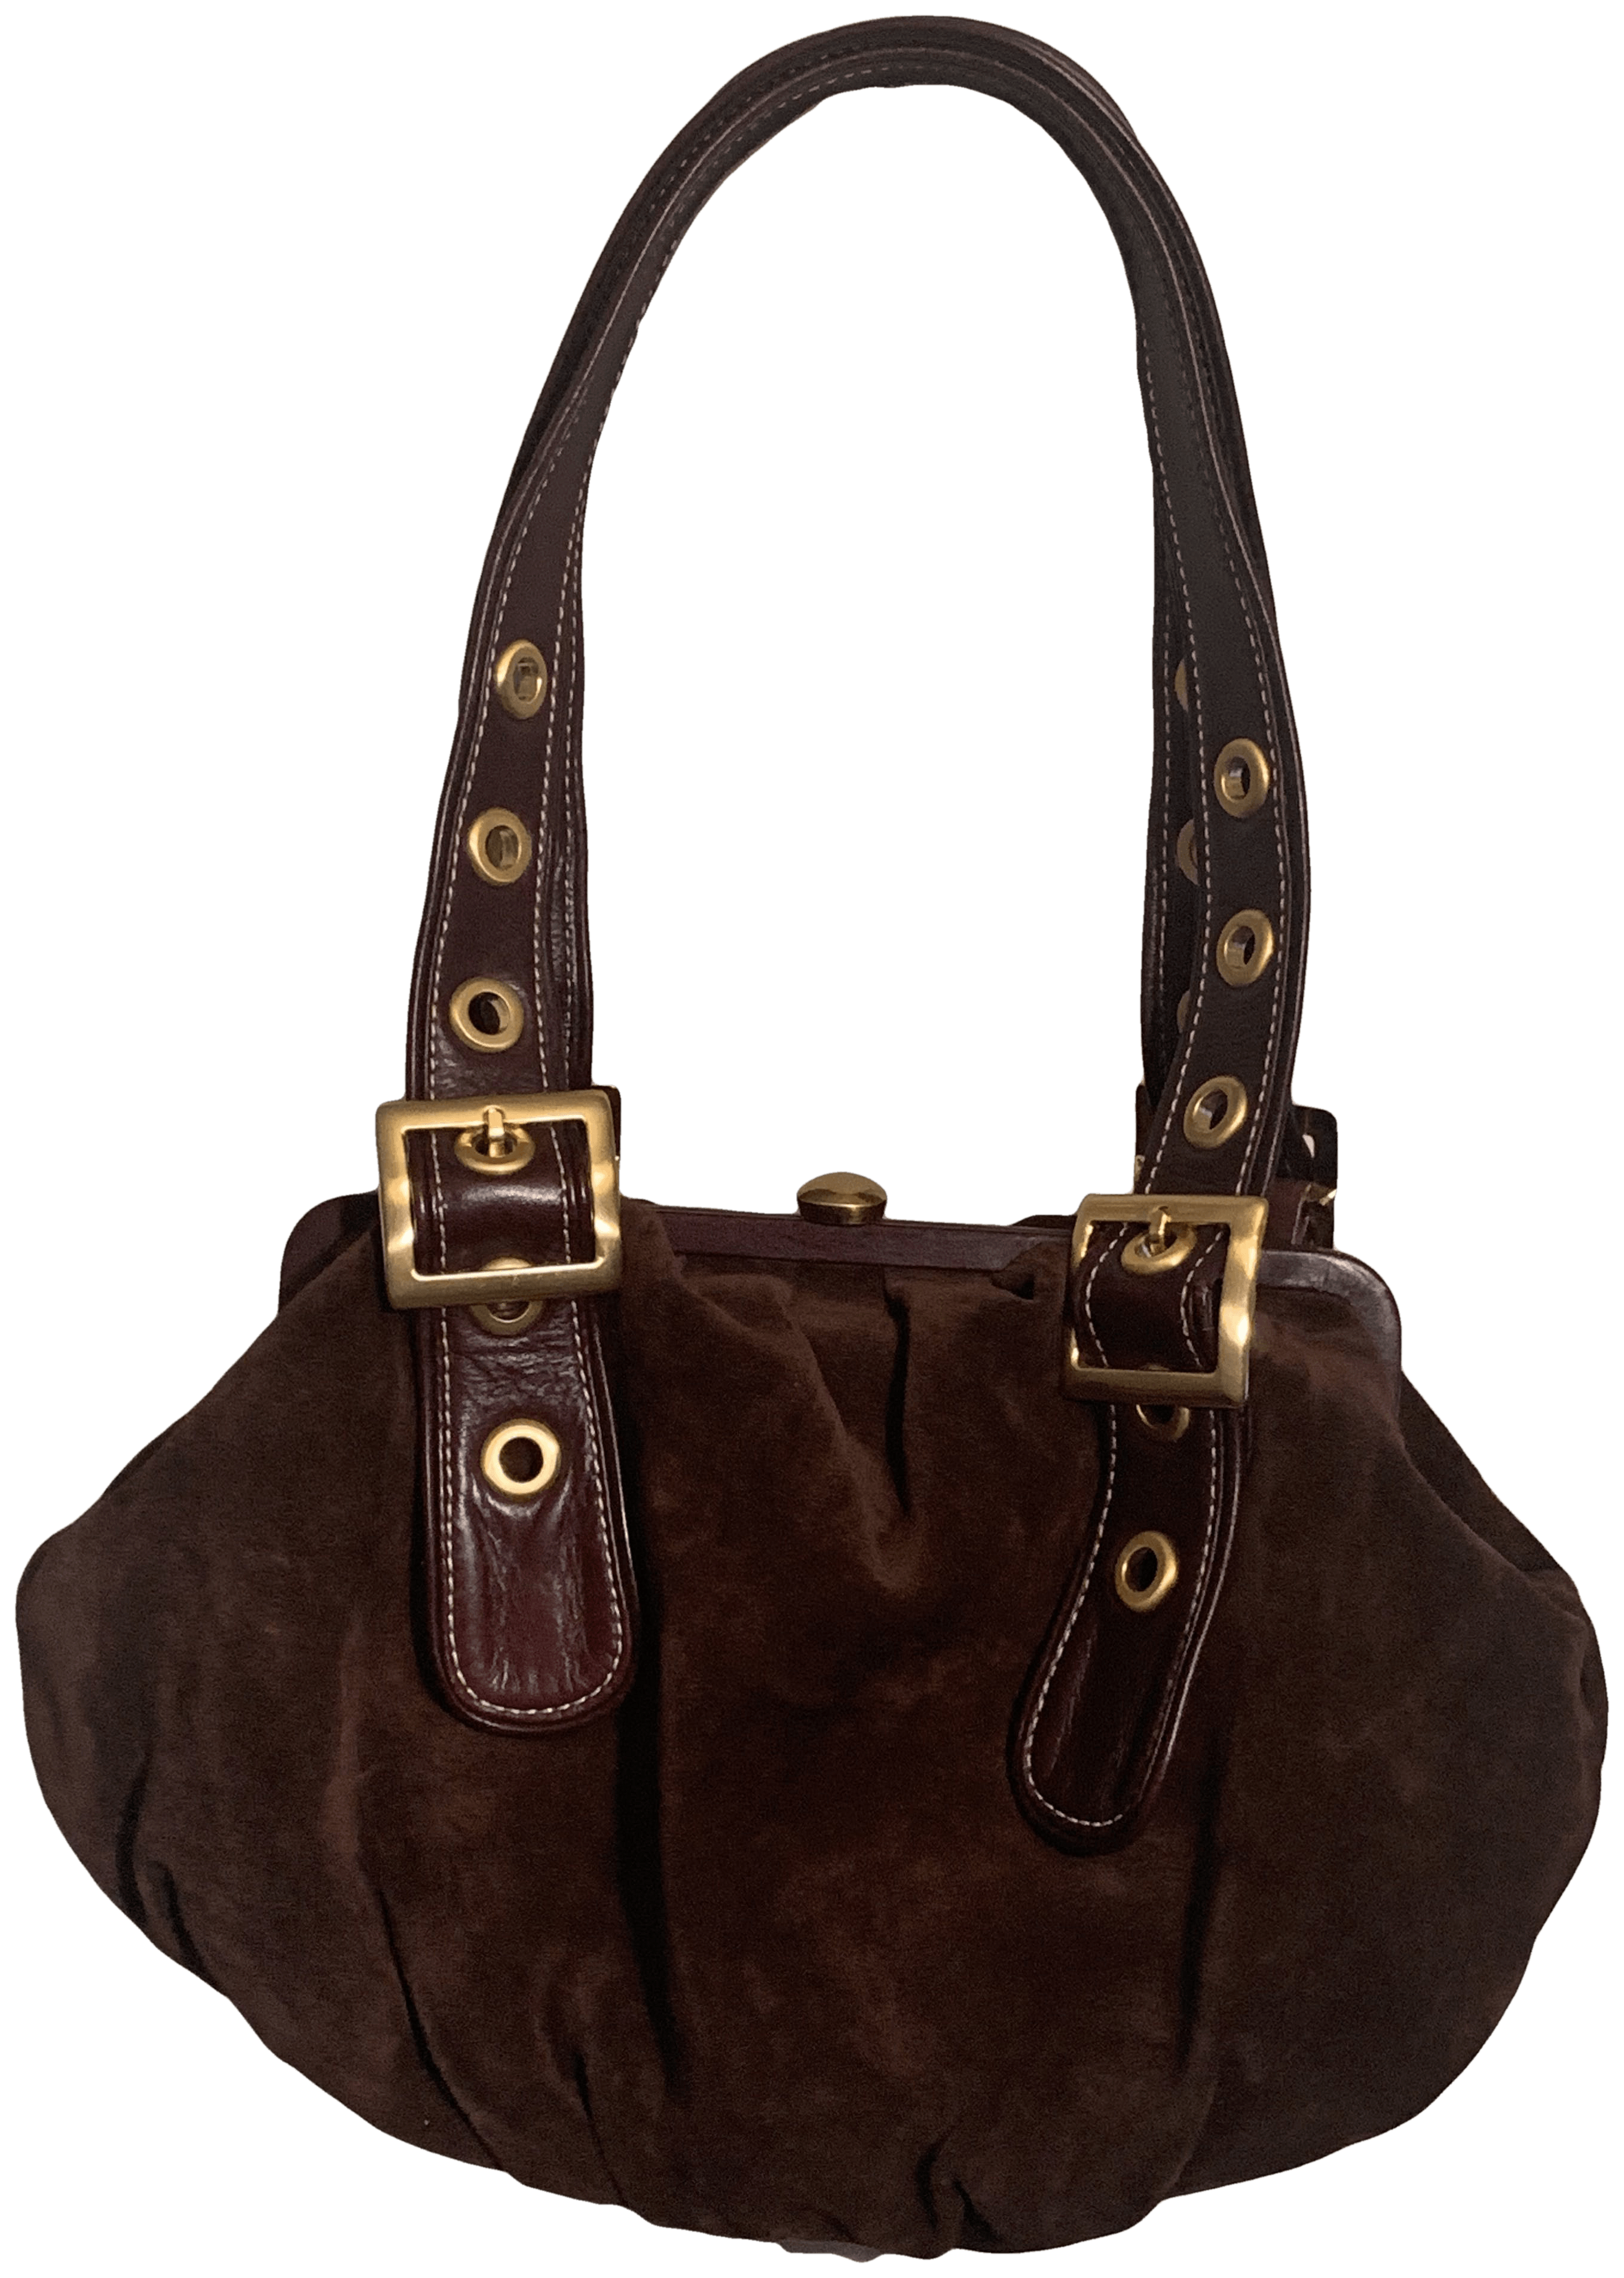 Maxx NY, Bags, New Maxx New York Leather Handbag